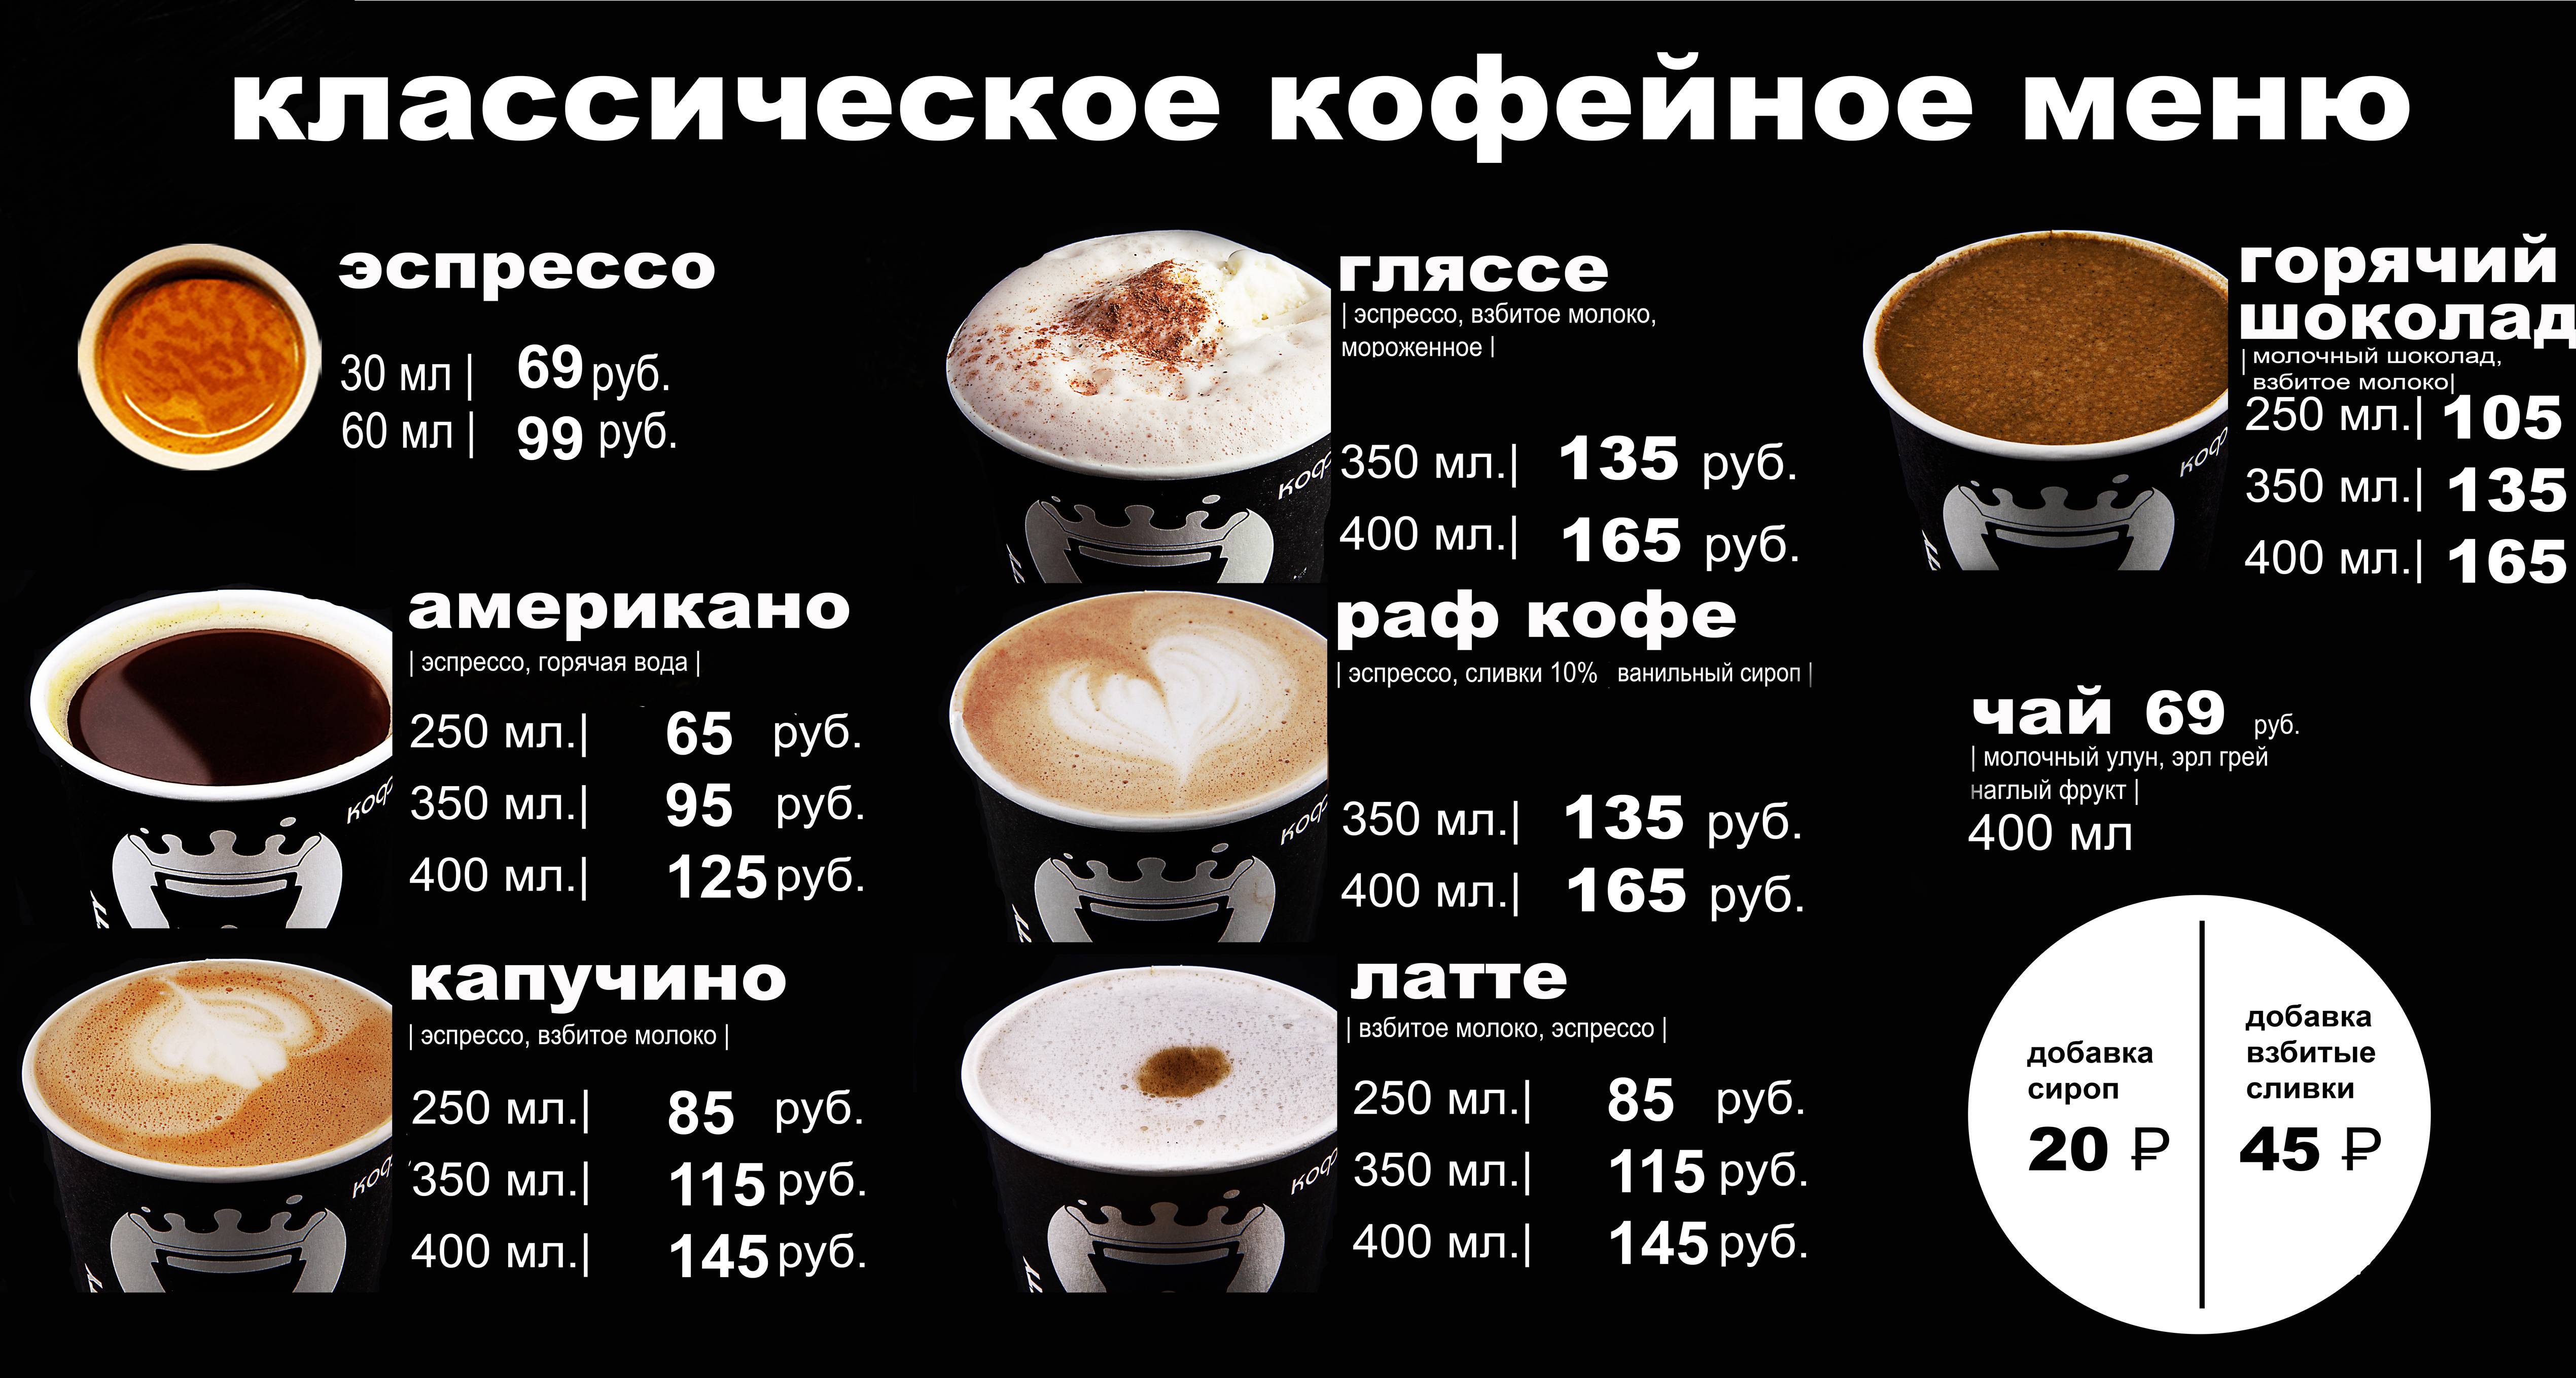 Кофе доппио (doppio) - двойной эспрессо, рецепт приготовления в кофемашине, чем отличается от лунго, ристретто и американо